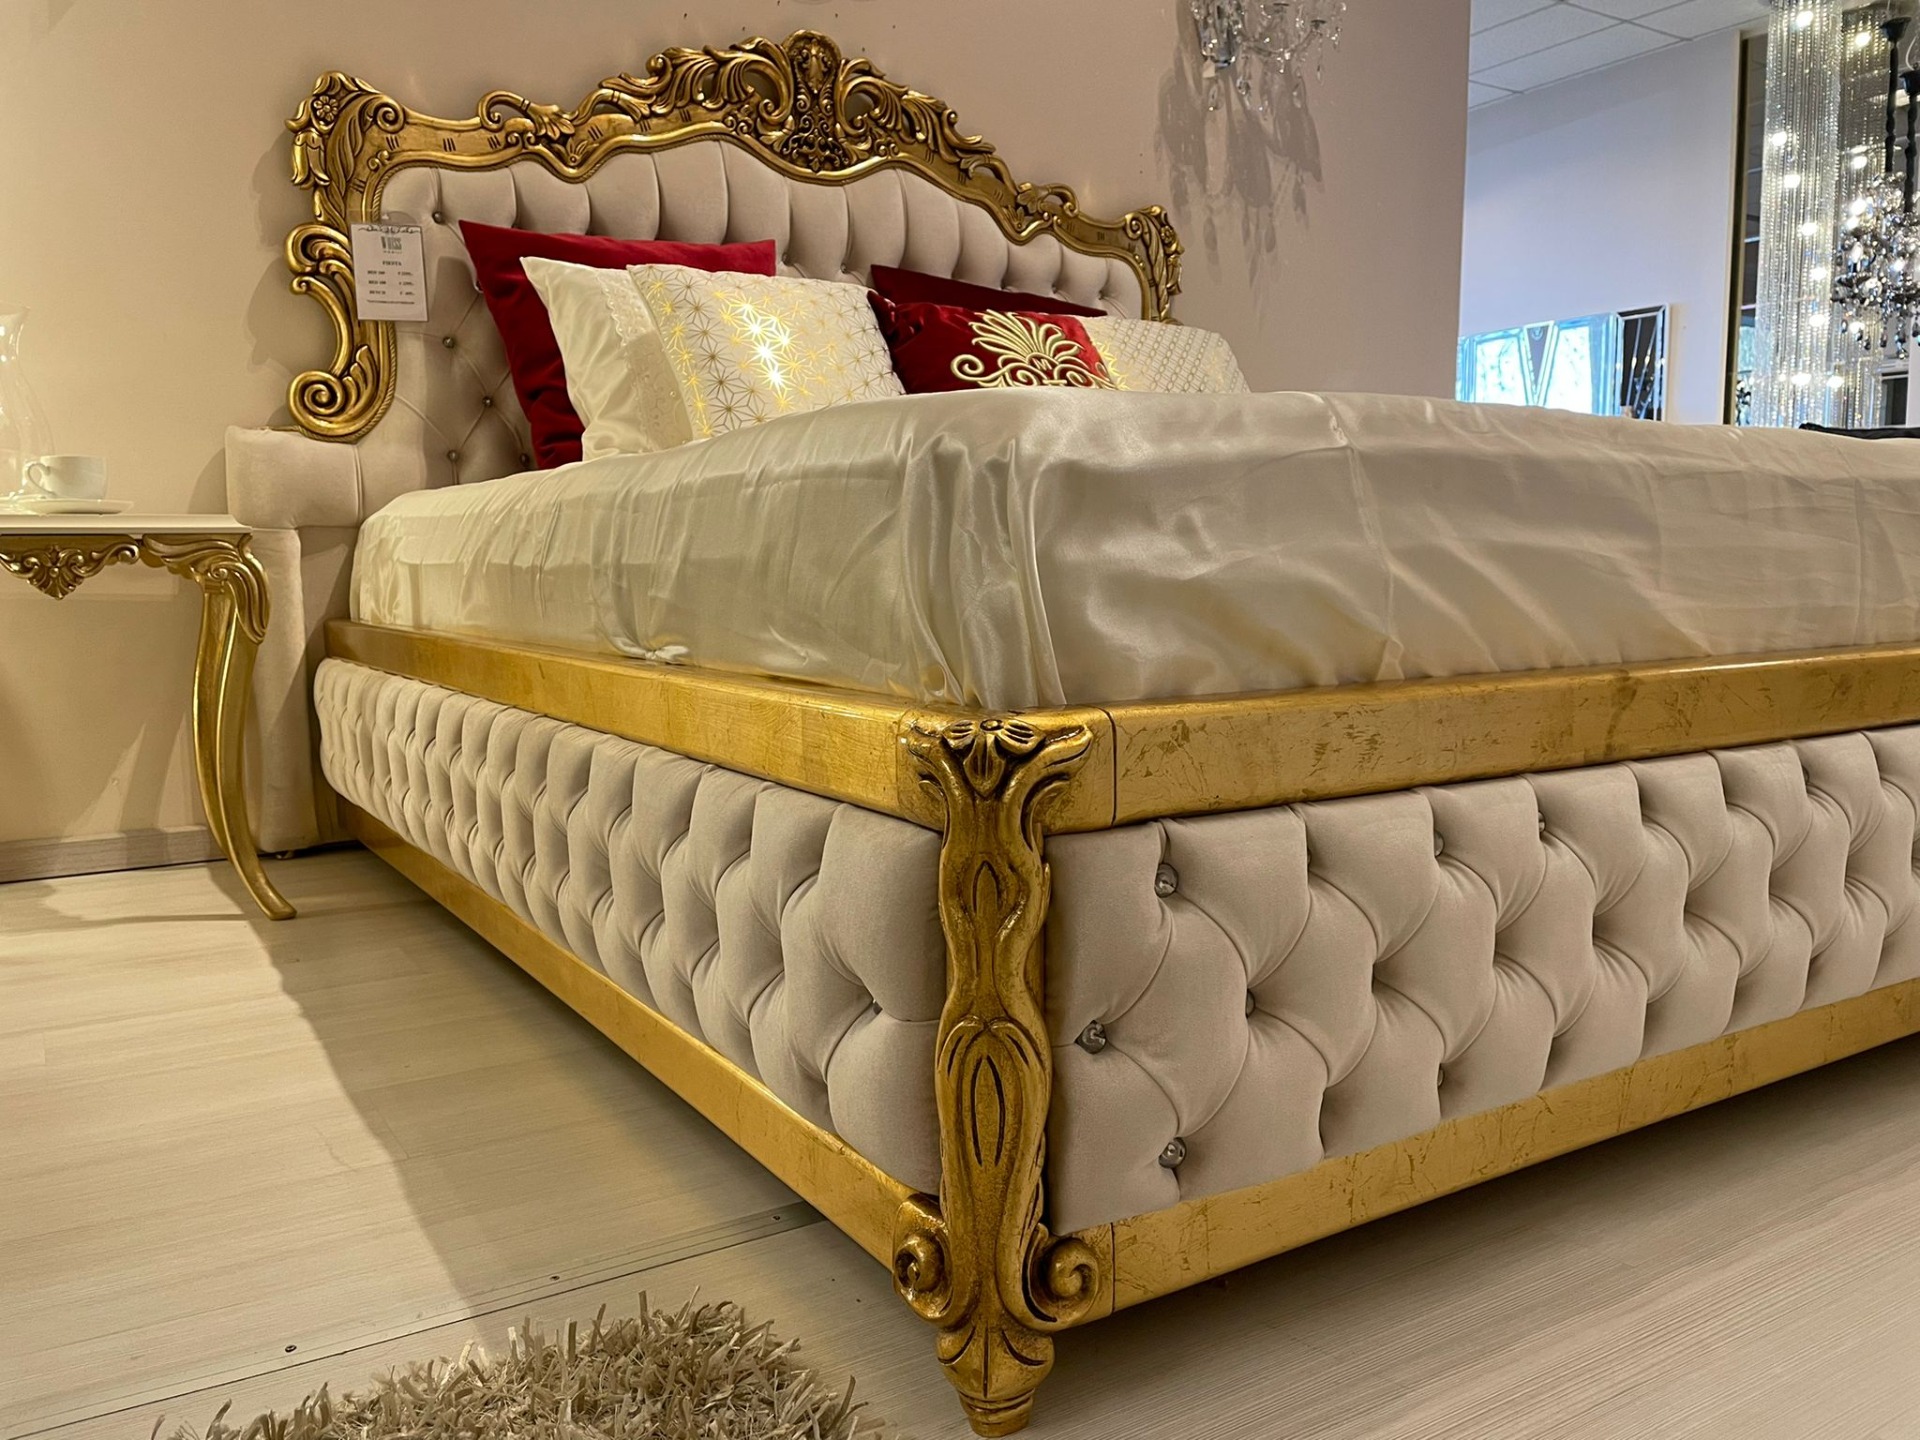 Kreet Zoek machine optimalisatie Beschrijving 9 FIESTA Gouden Barok Bed Luxe Slaapkamer Interieur - Klassiek Slaapkamers  - Woiss Meubels | Stijlvol Inrichten voor Luxe Interieur